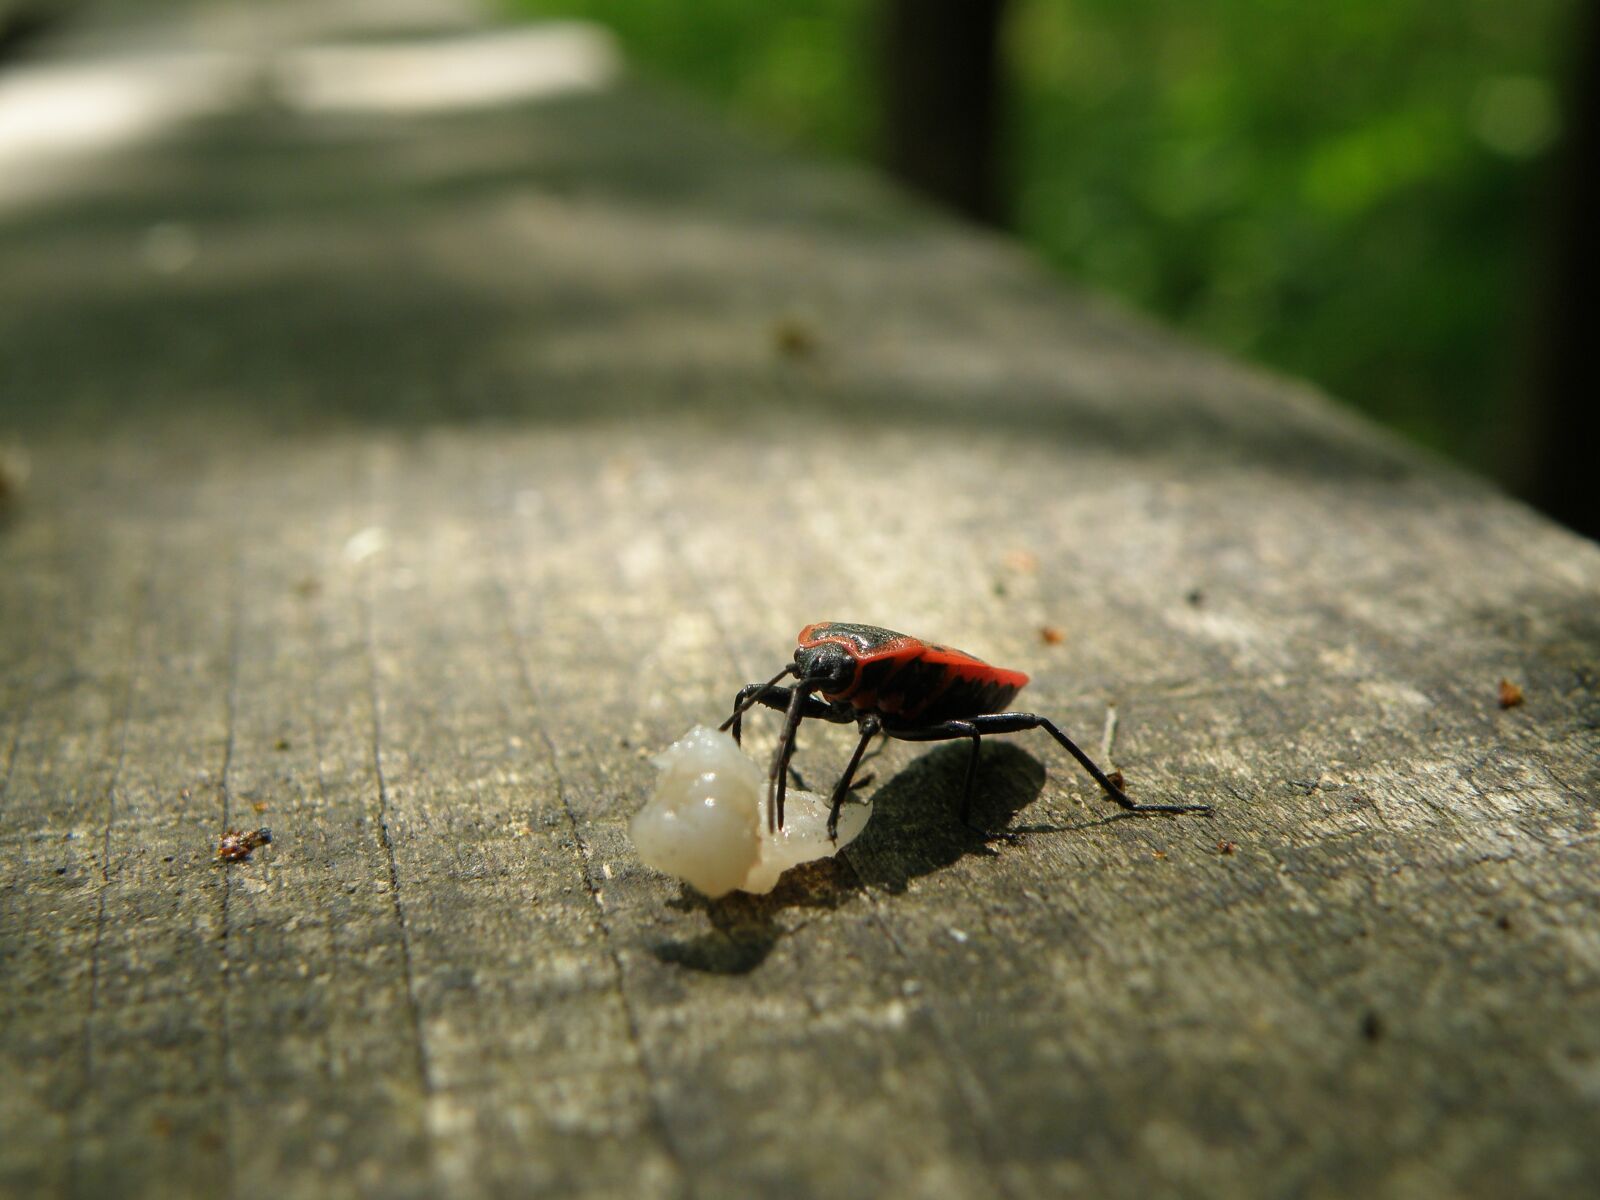 Olympus SP570UZ sample photo. Ladybug, macro, error photography